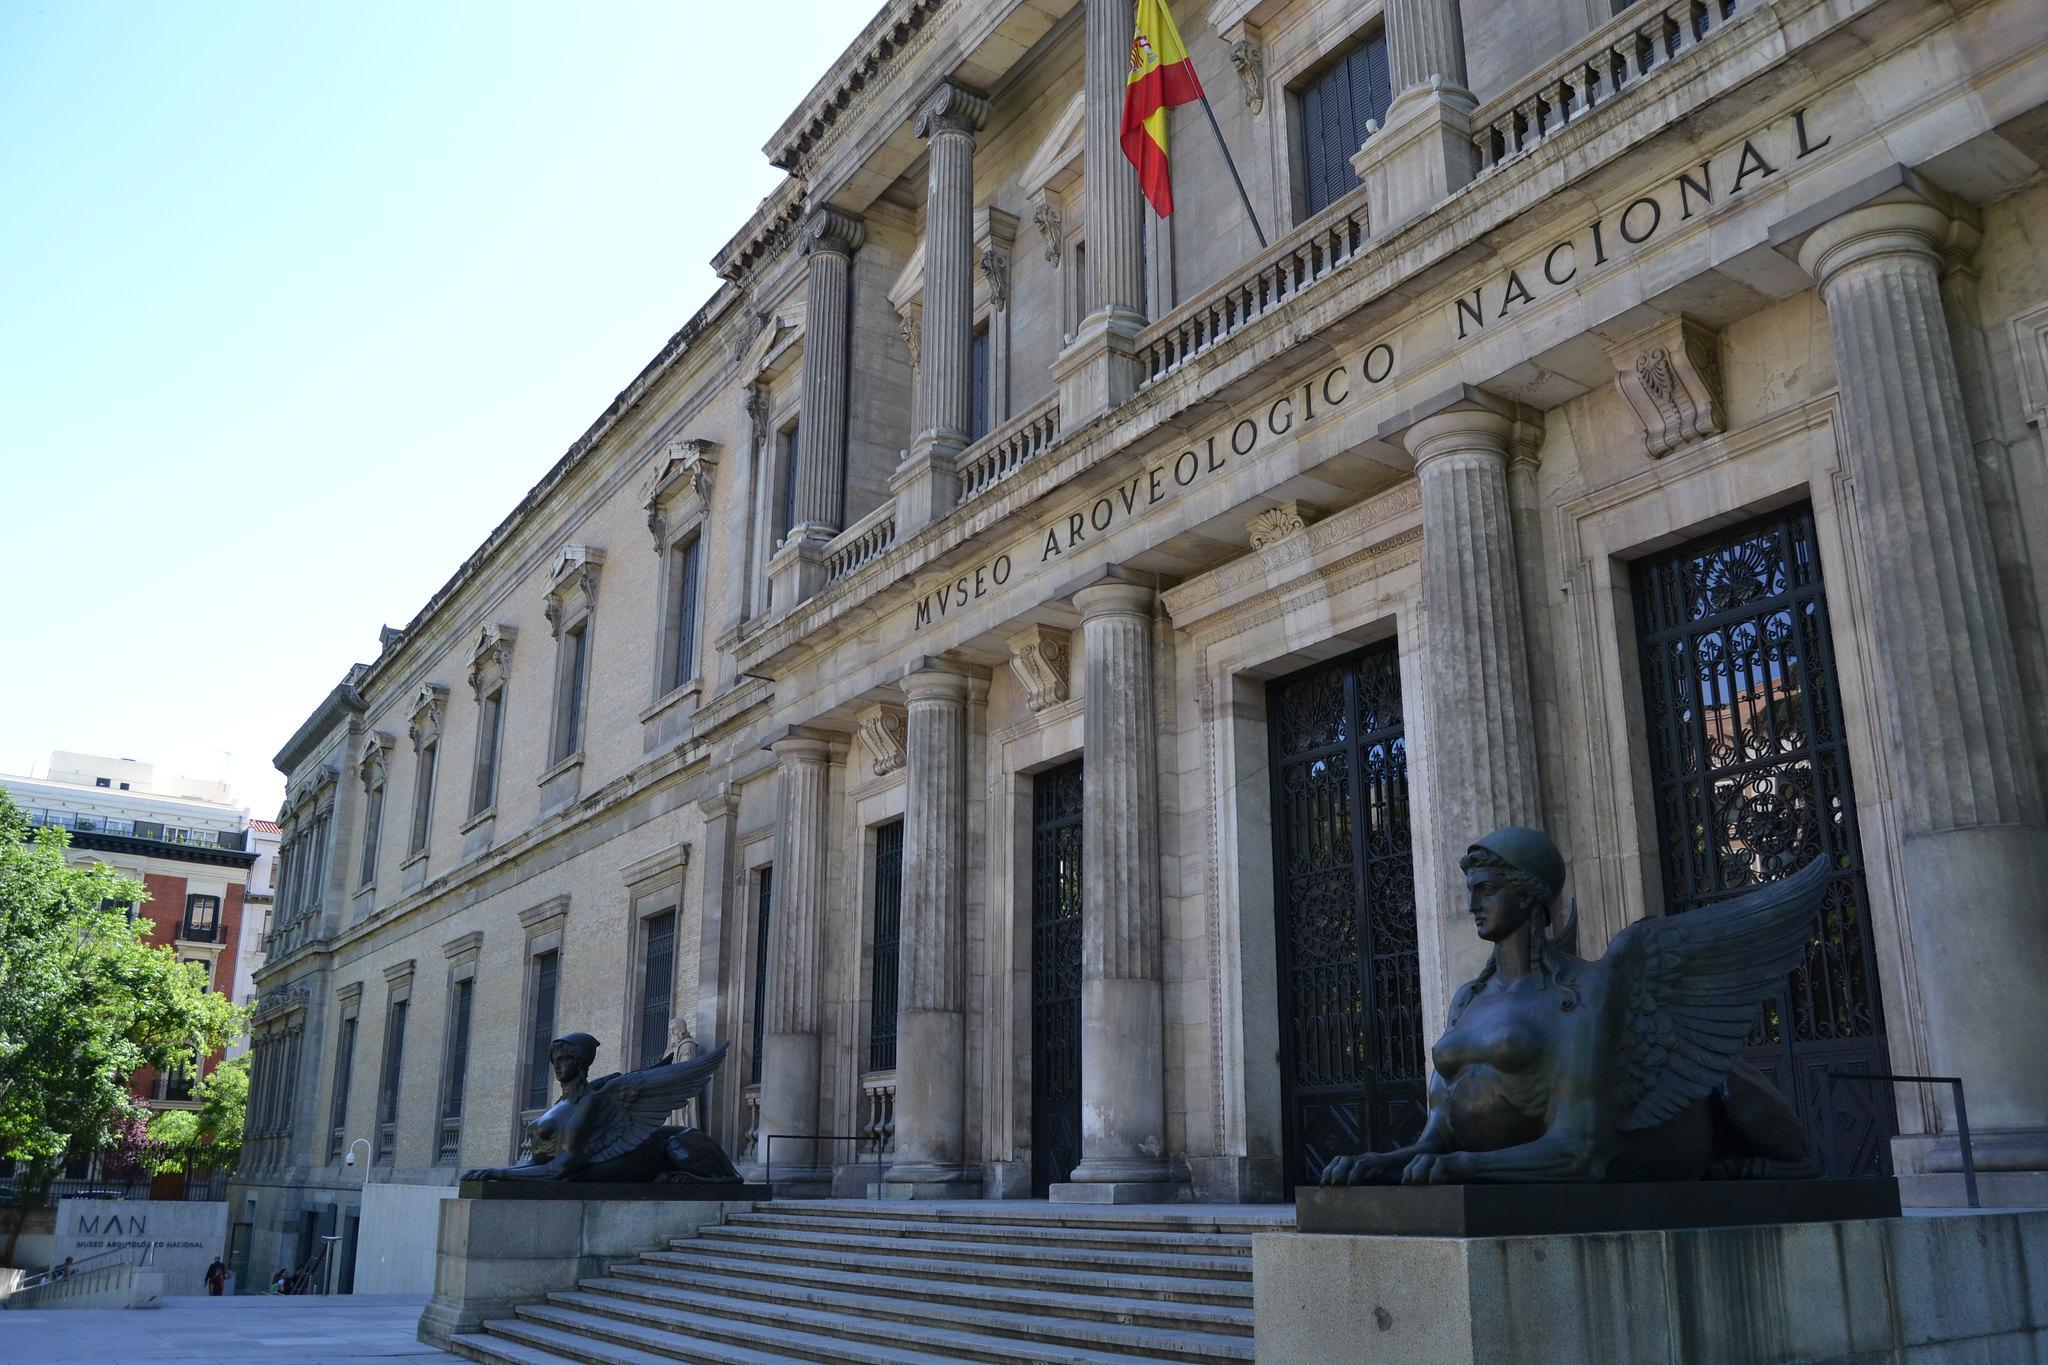 Μαδρίτη - Εθνικό Αρχαιολογικό Μουσείο της Ισπανίας1bb